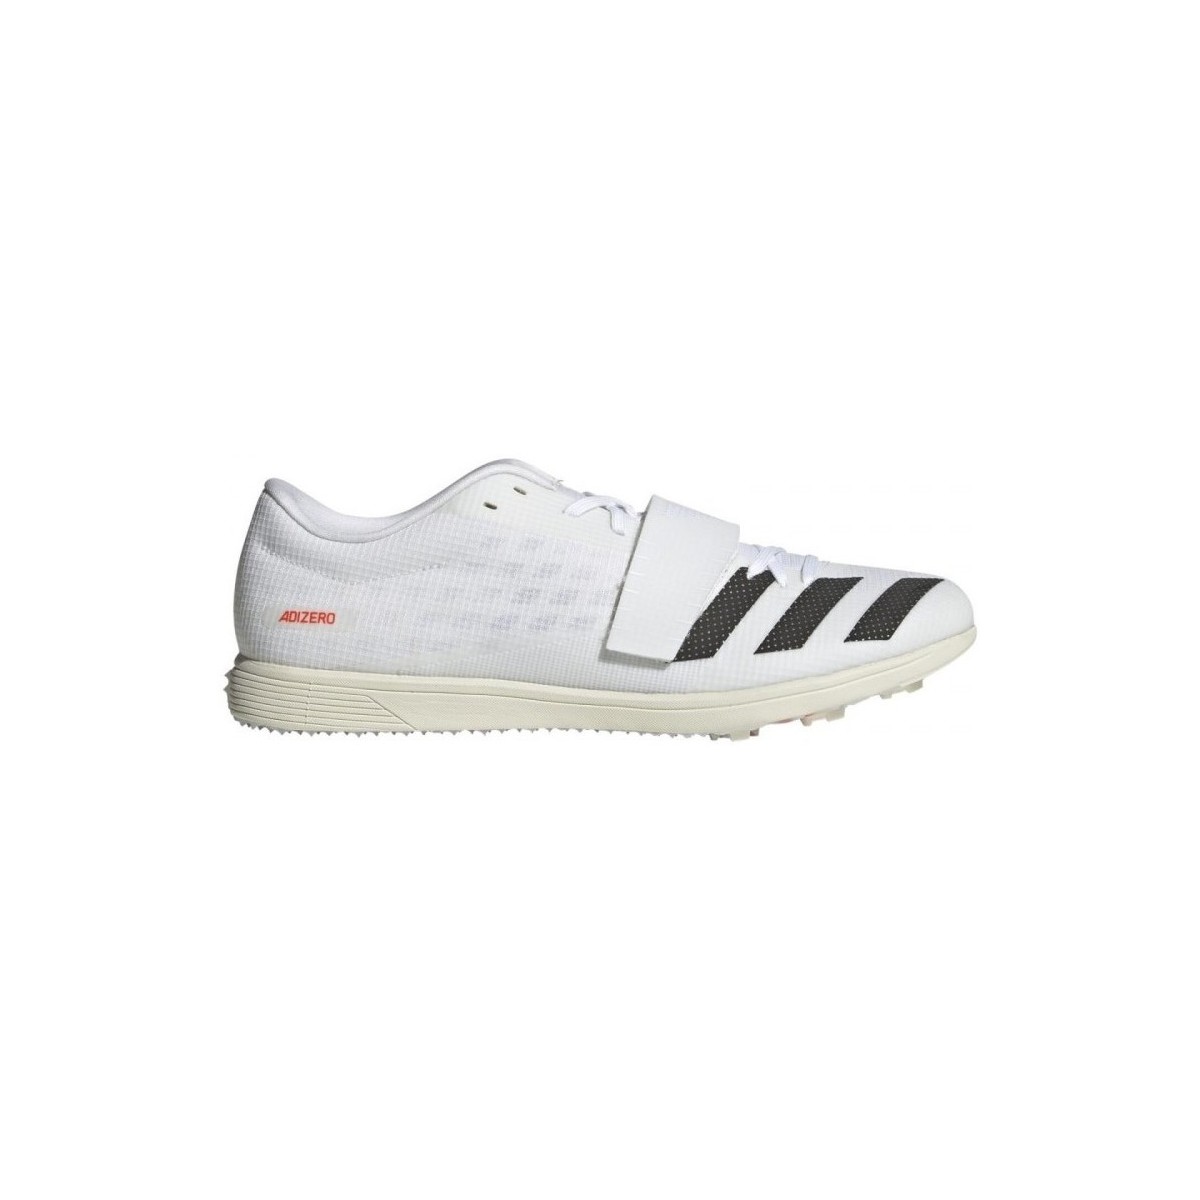 Chaussures Running / trail adidas Originals Adizero Tj/Pv Blanc